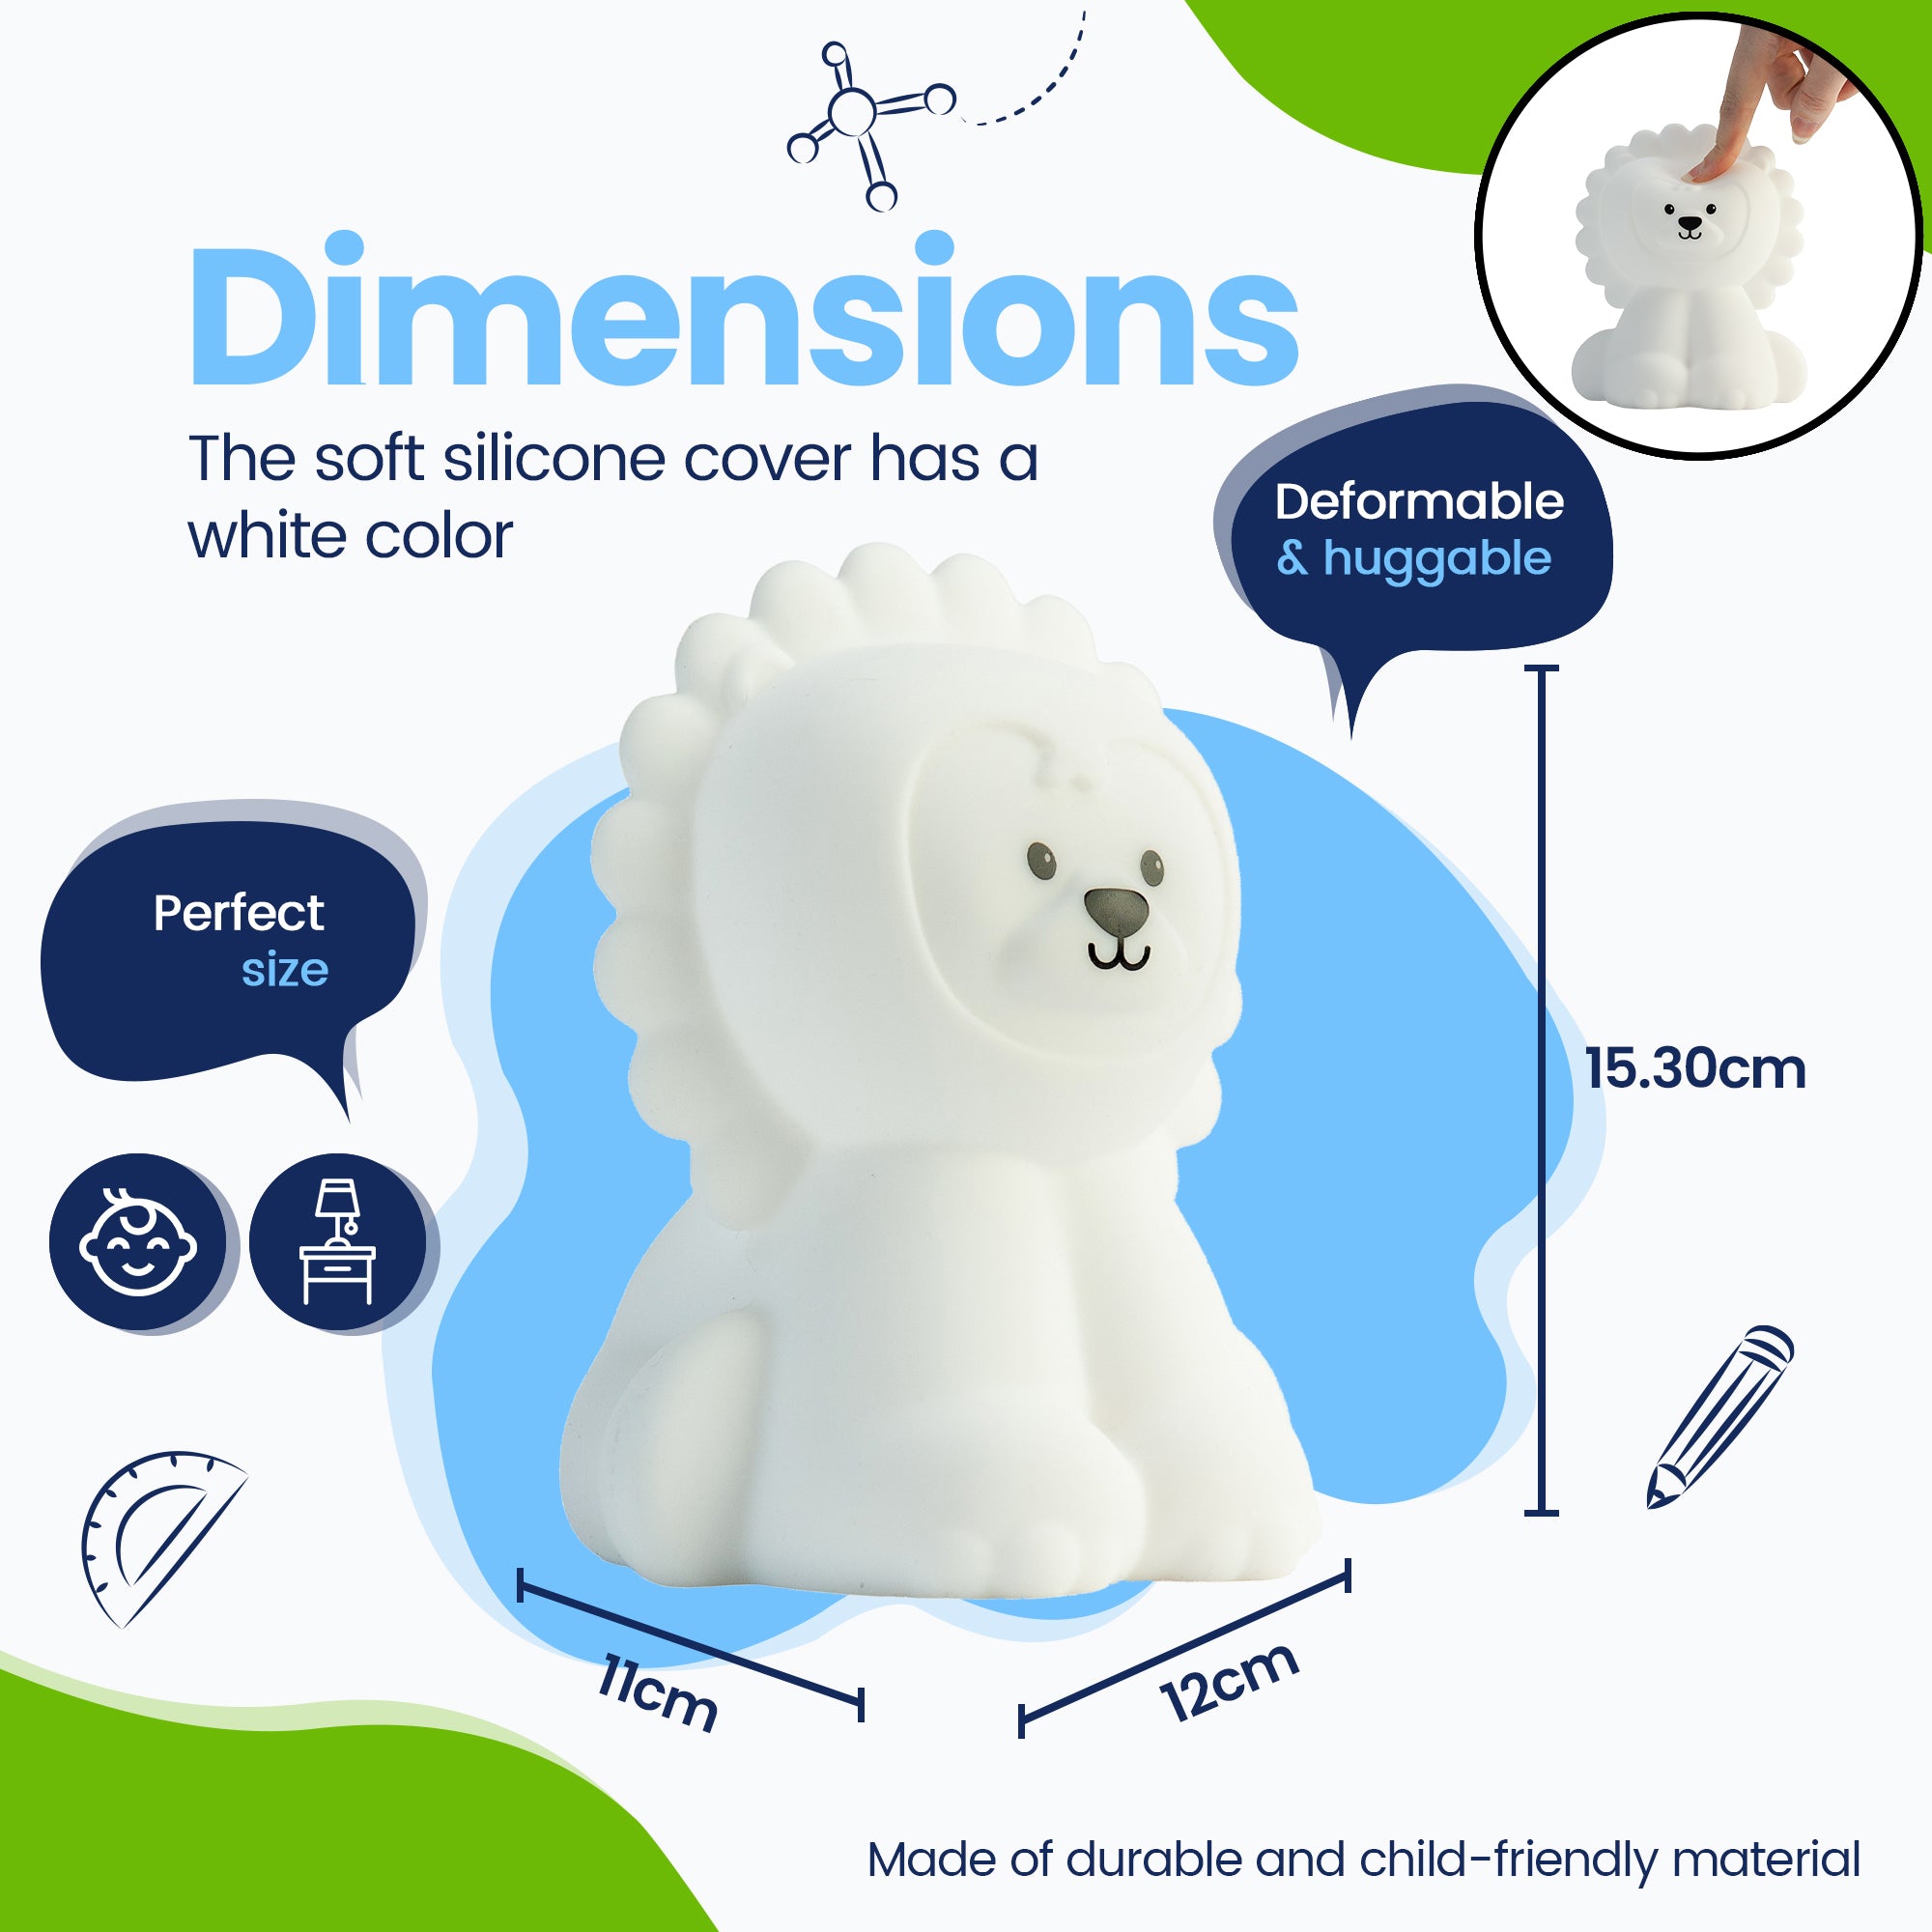 Dimensioner Løvenatlampe - Perfekt størrelse - Premium Design - Silikoneovertrækket er hvidt i farven